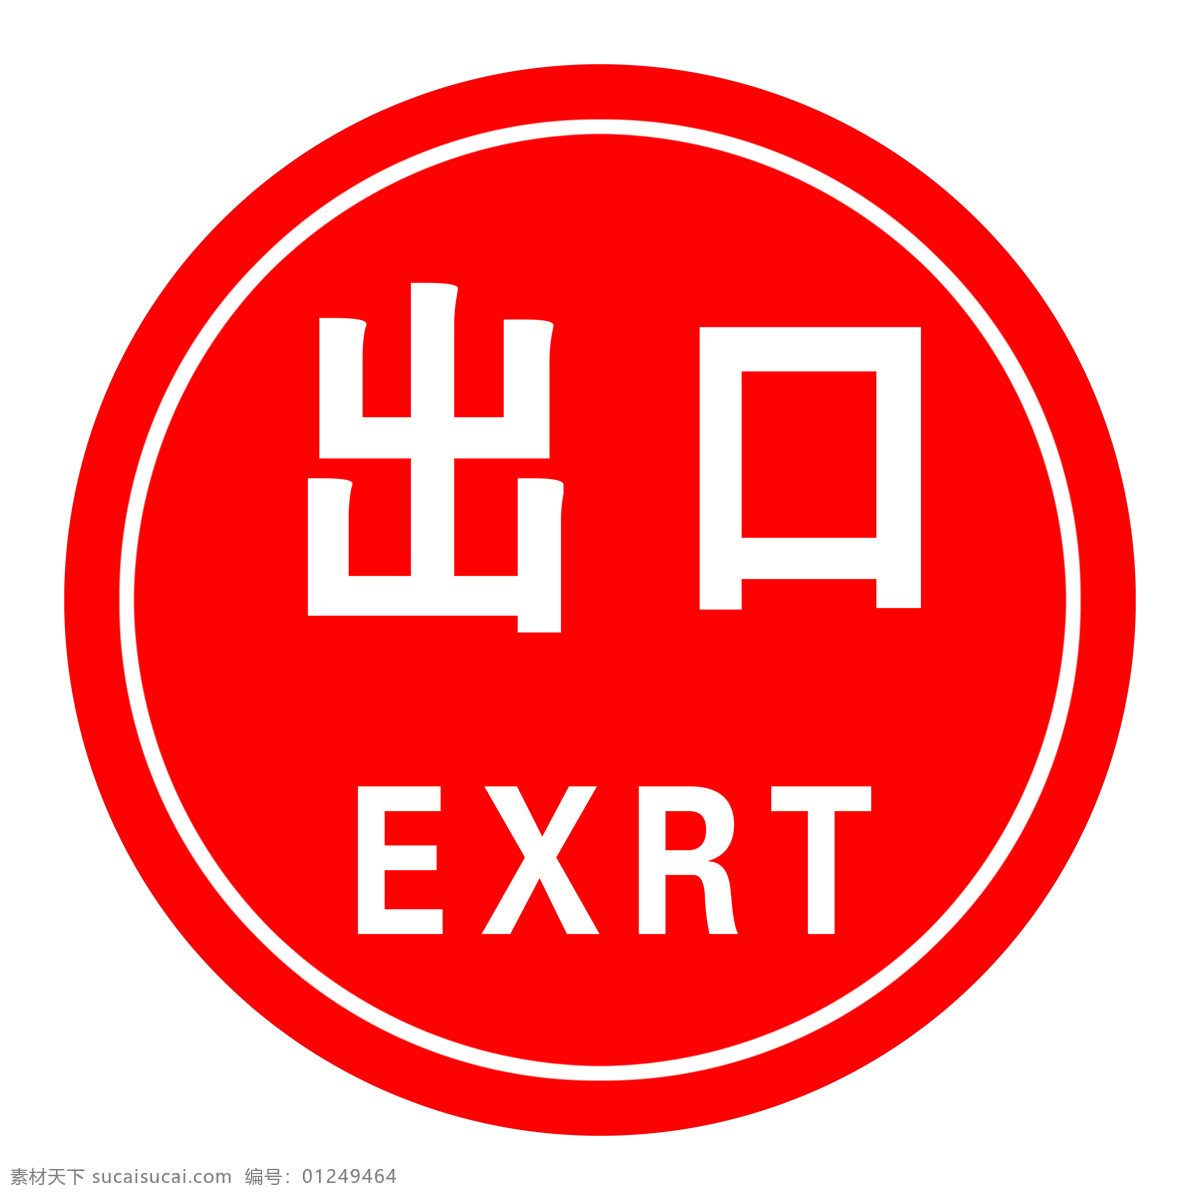 出口 入口 出入口 牌 指示牌 箭头 标识 方向 方向牌 路标 路牌 标志图标 公共标识标志